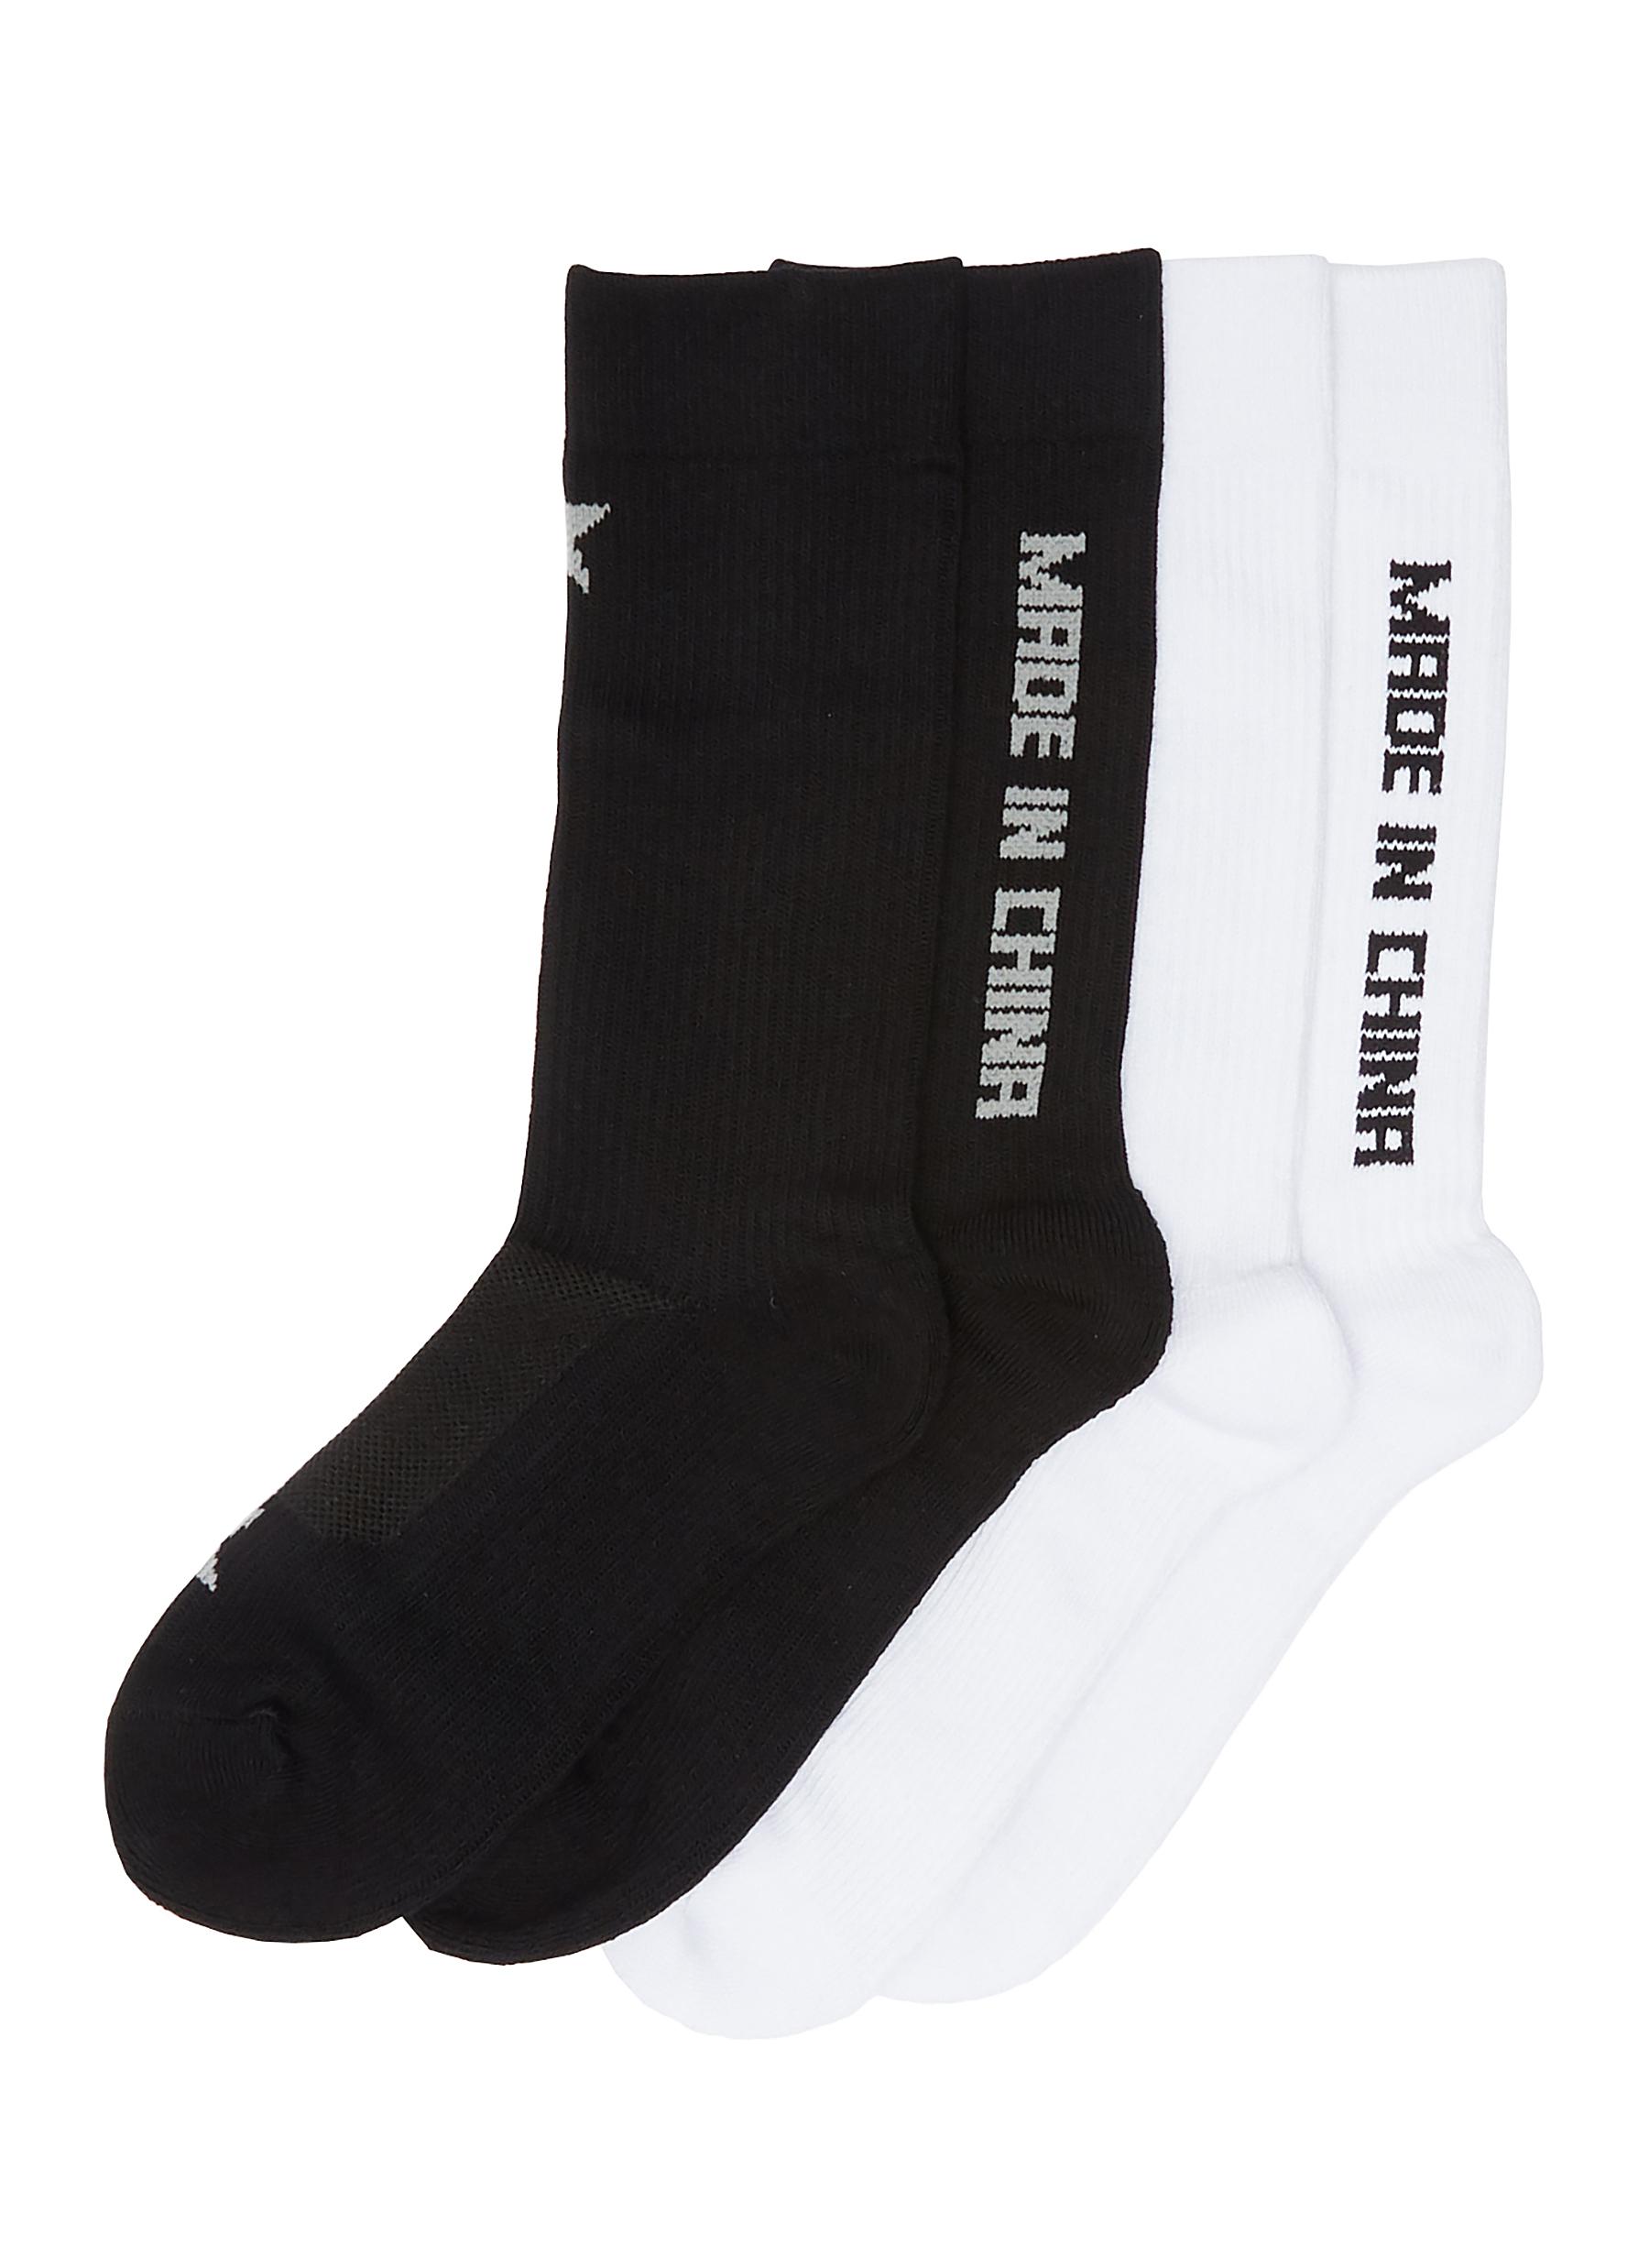 'Made in China' slogan jacquard socks 2-pack set